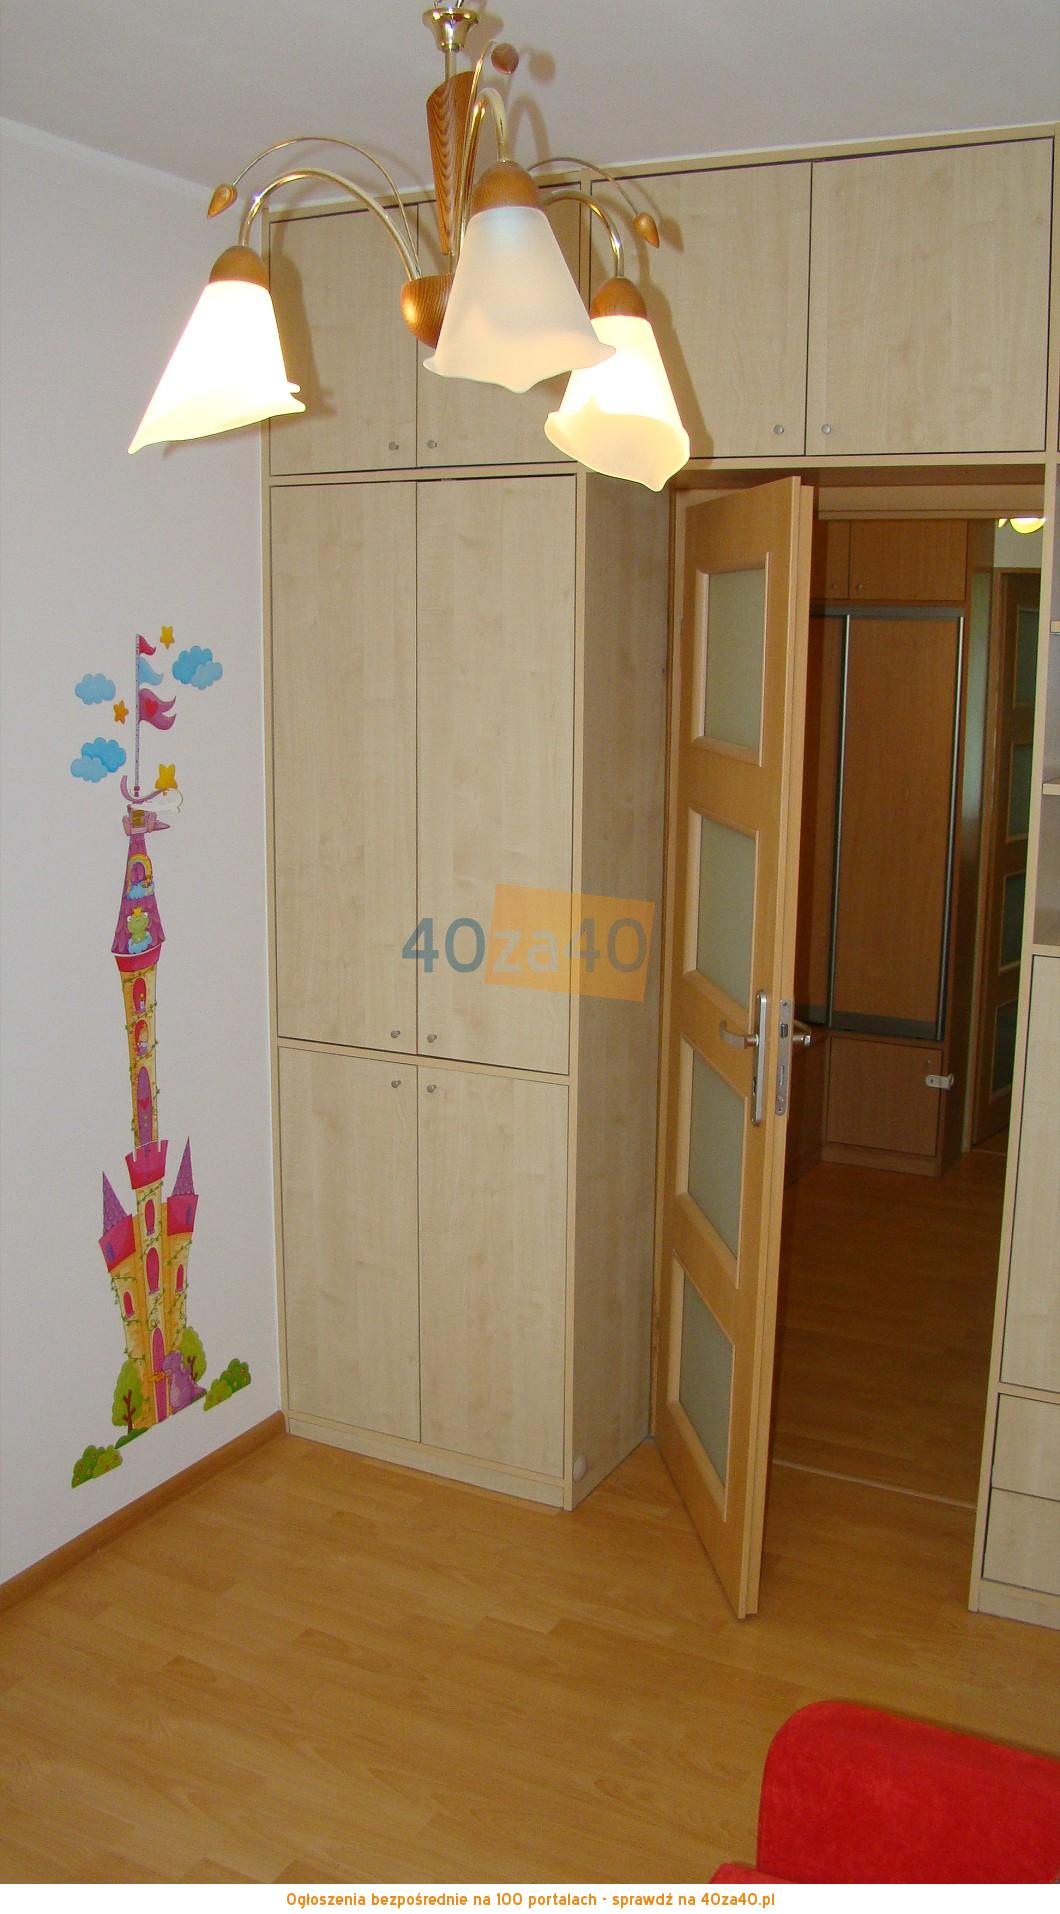 Mieszkanie do wynajęcia, pokoje: 2, cena: 1 050,00 PLN, Szczecin, kontakt: 602 159 350